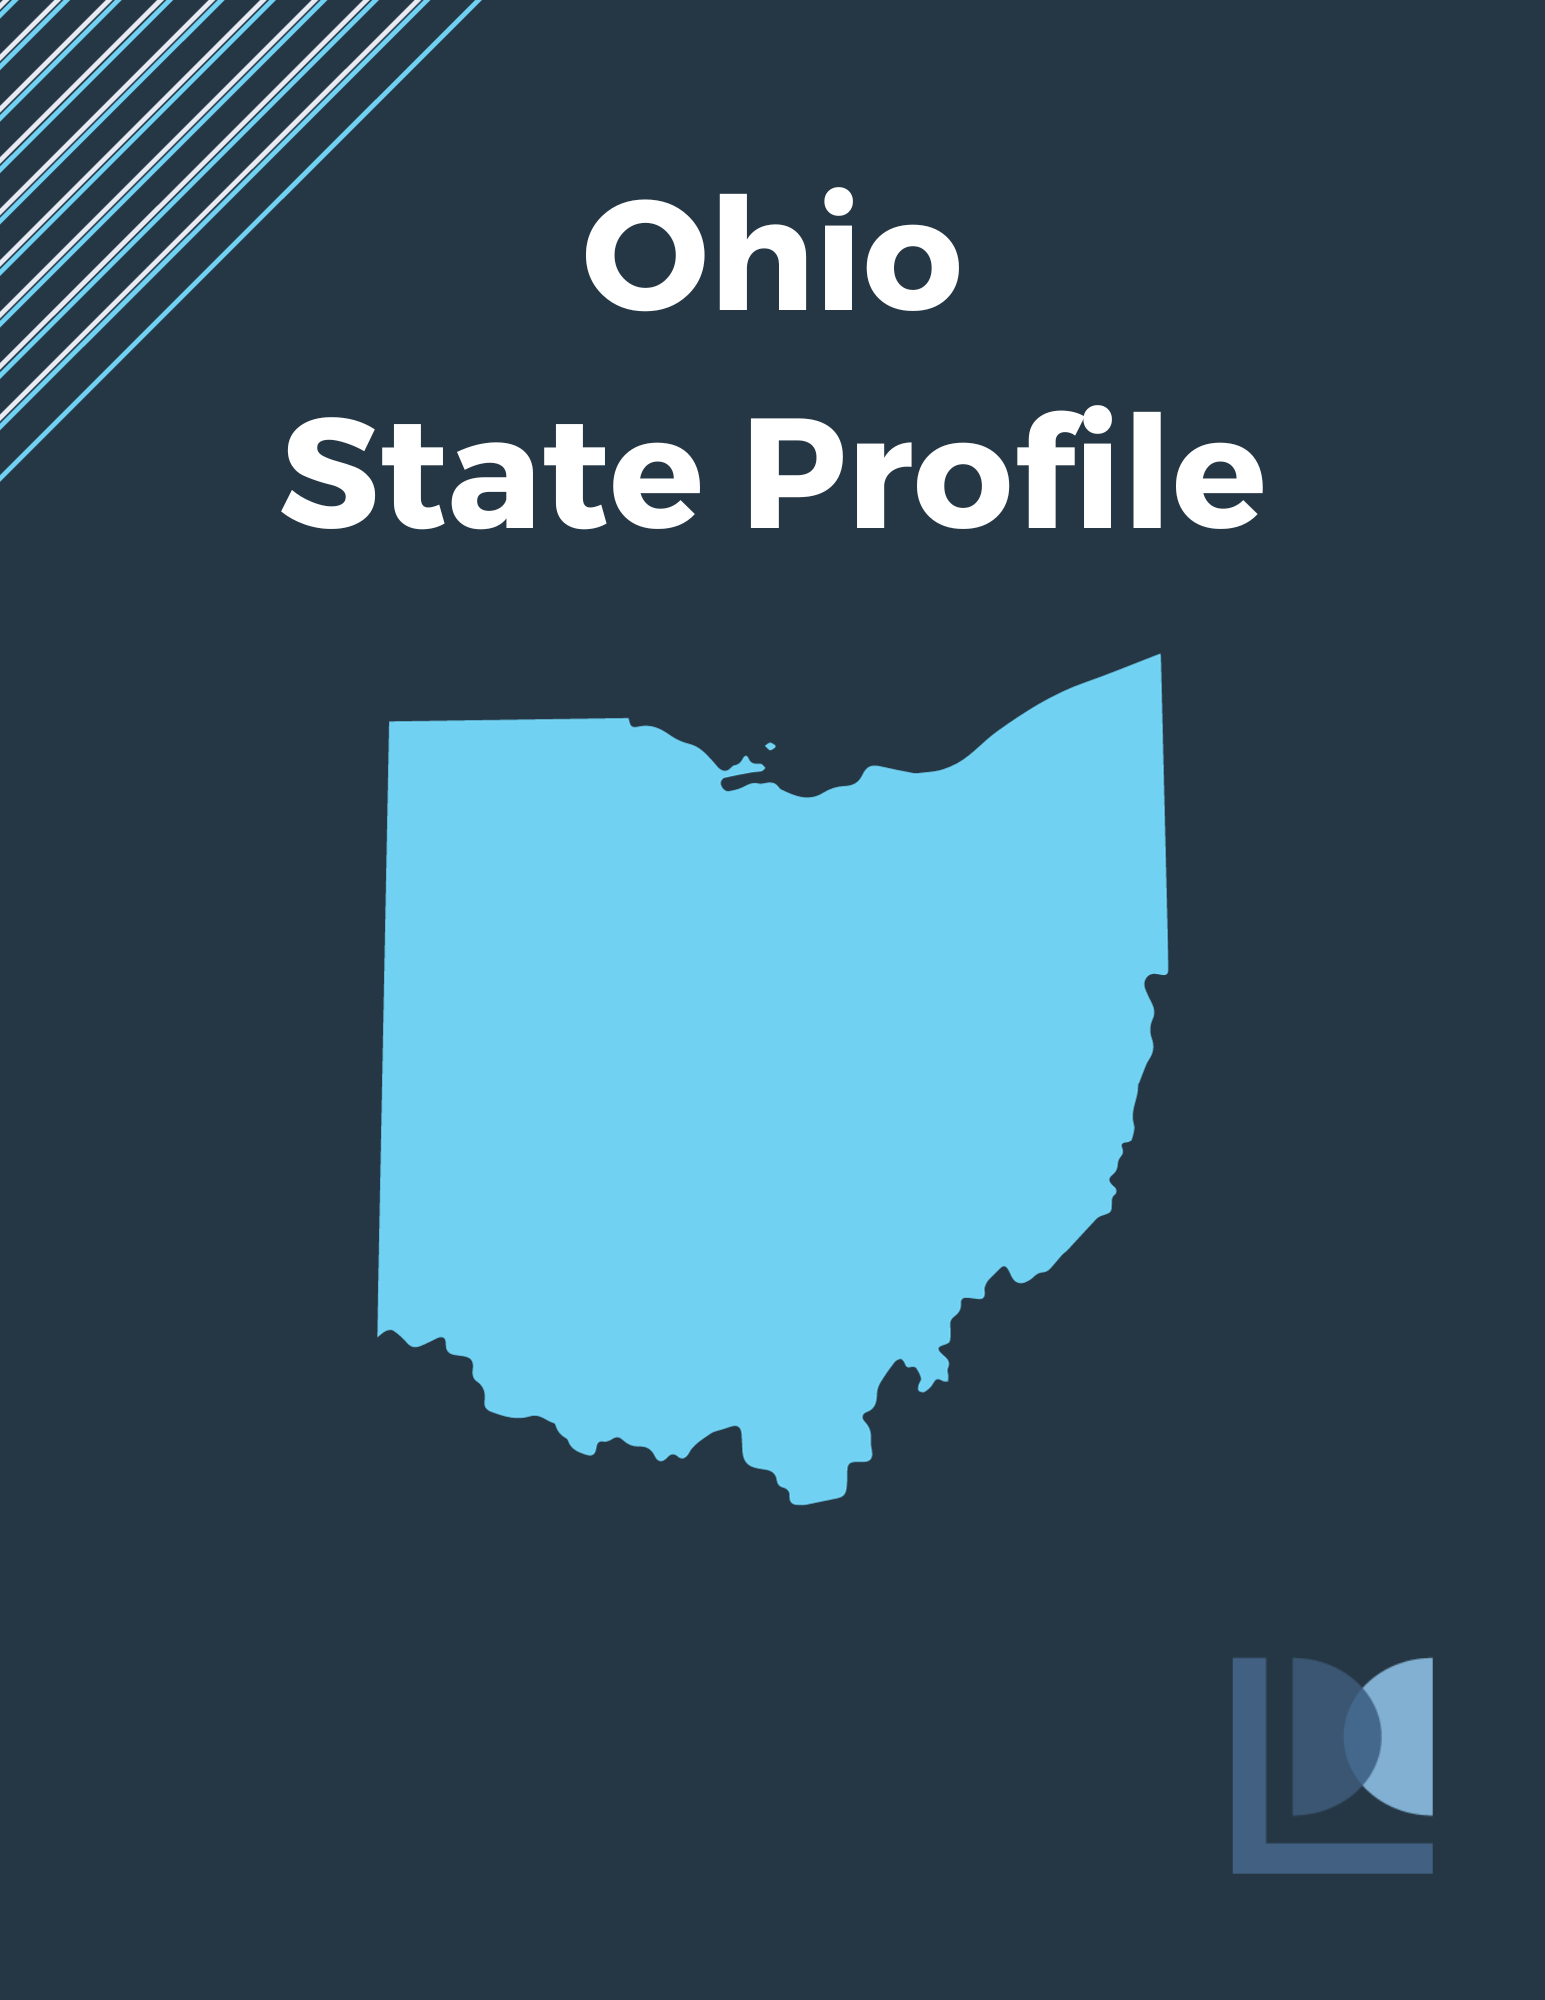 Ohio State Profile (Copy)